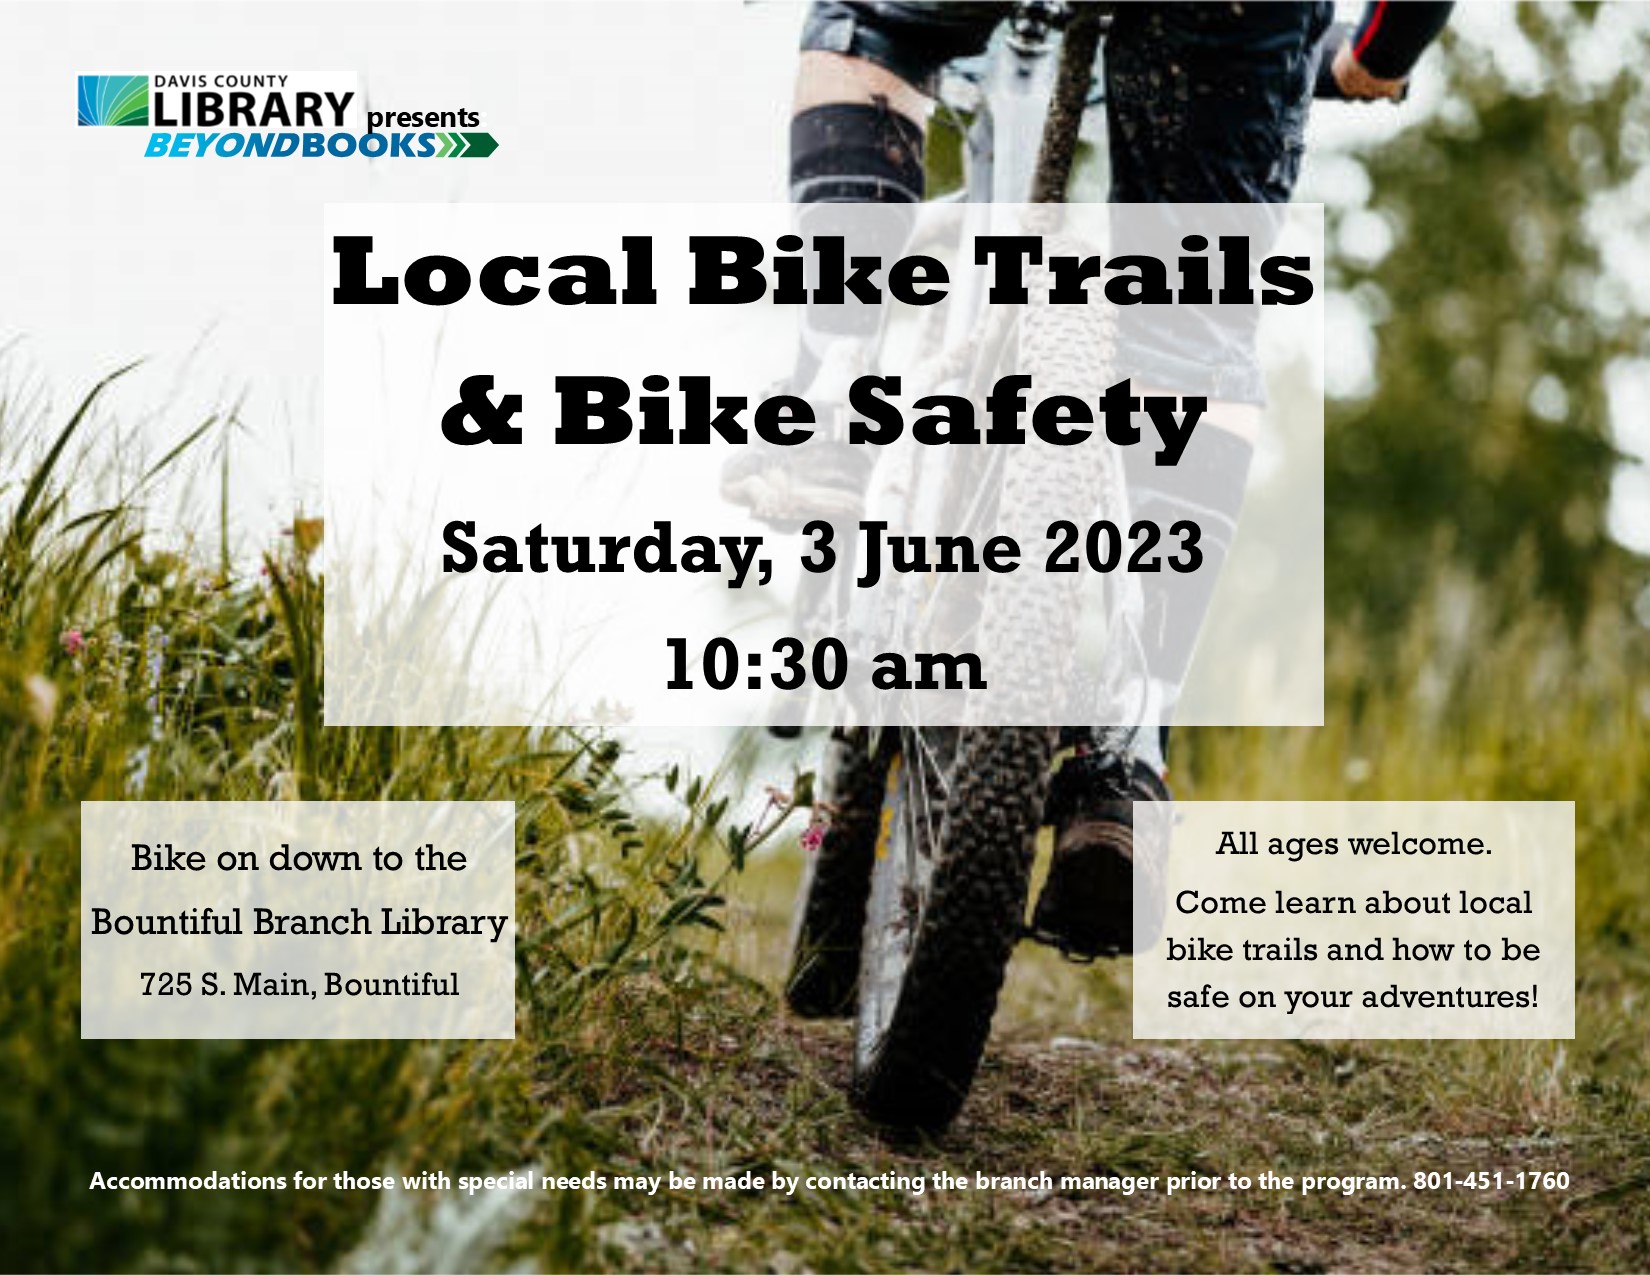 Bike trail information flier